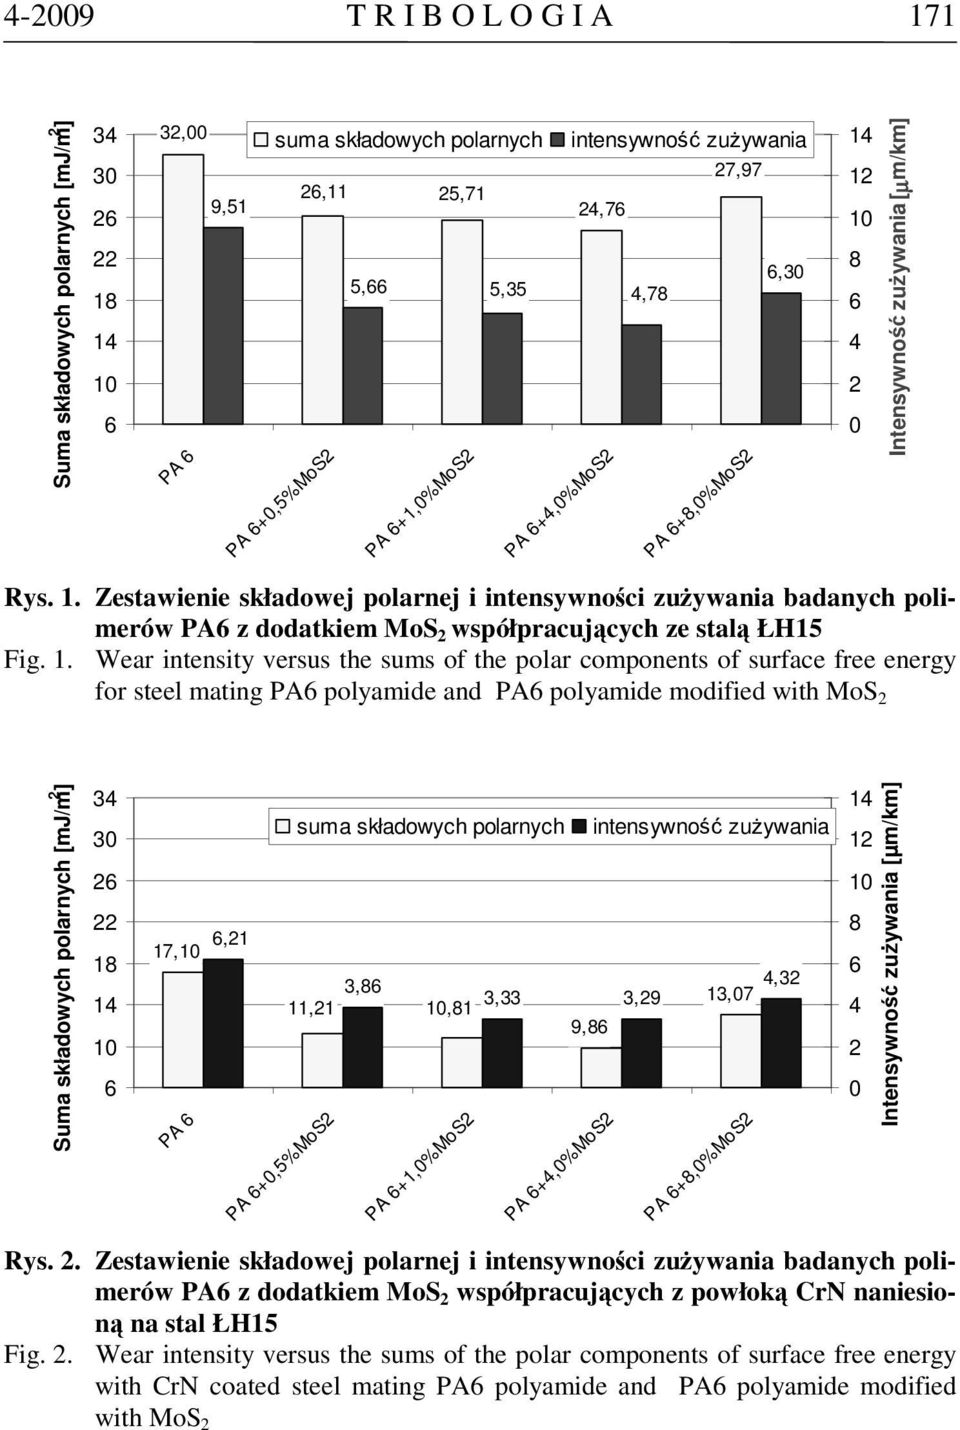 Zestawienie składowej polarnej i intensywności zużywania badanych polimerów PA z dodatkiem MoS współpracujących ze stalą ŁH15 Fig. 1.